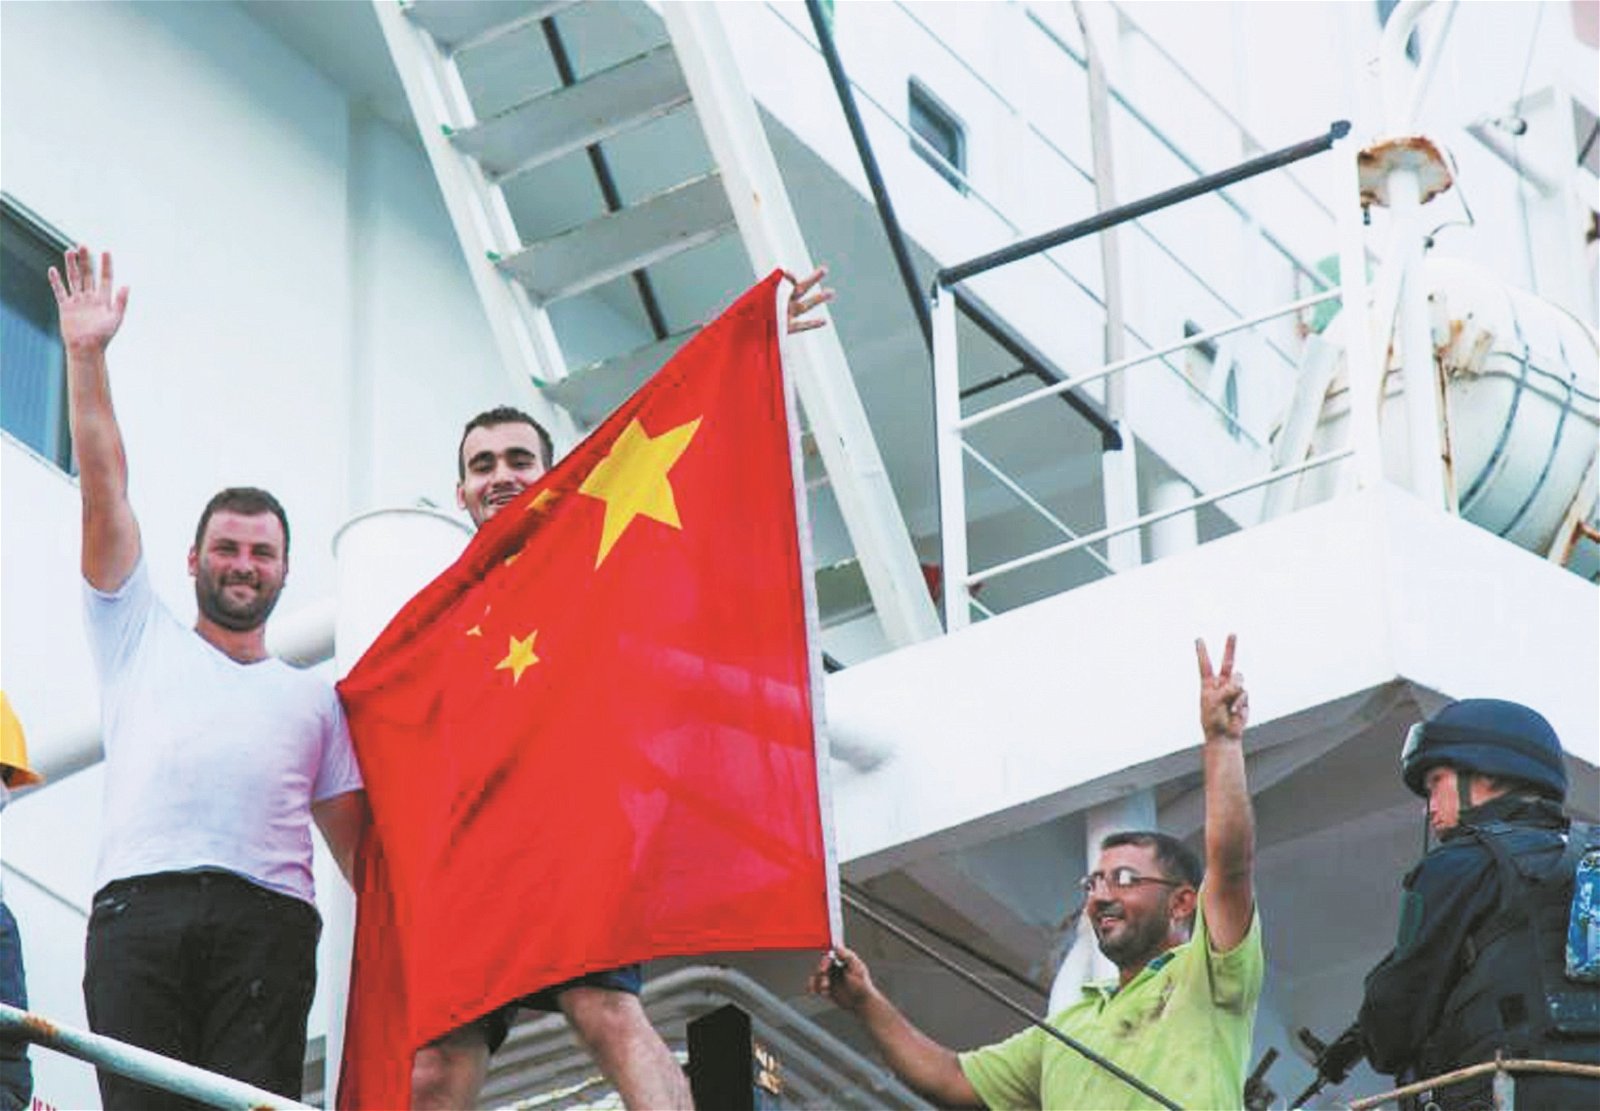 安全到达目的地后，货船船员举起中国五星红旗，送别随船护卫的9名中国护航官兵。